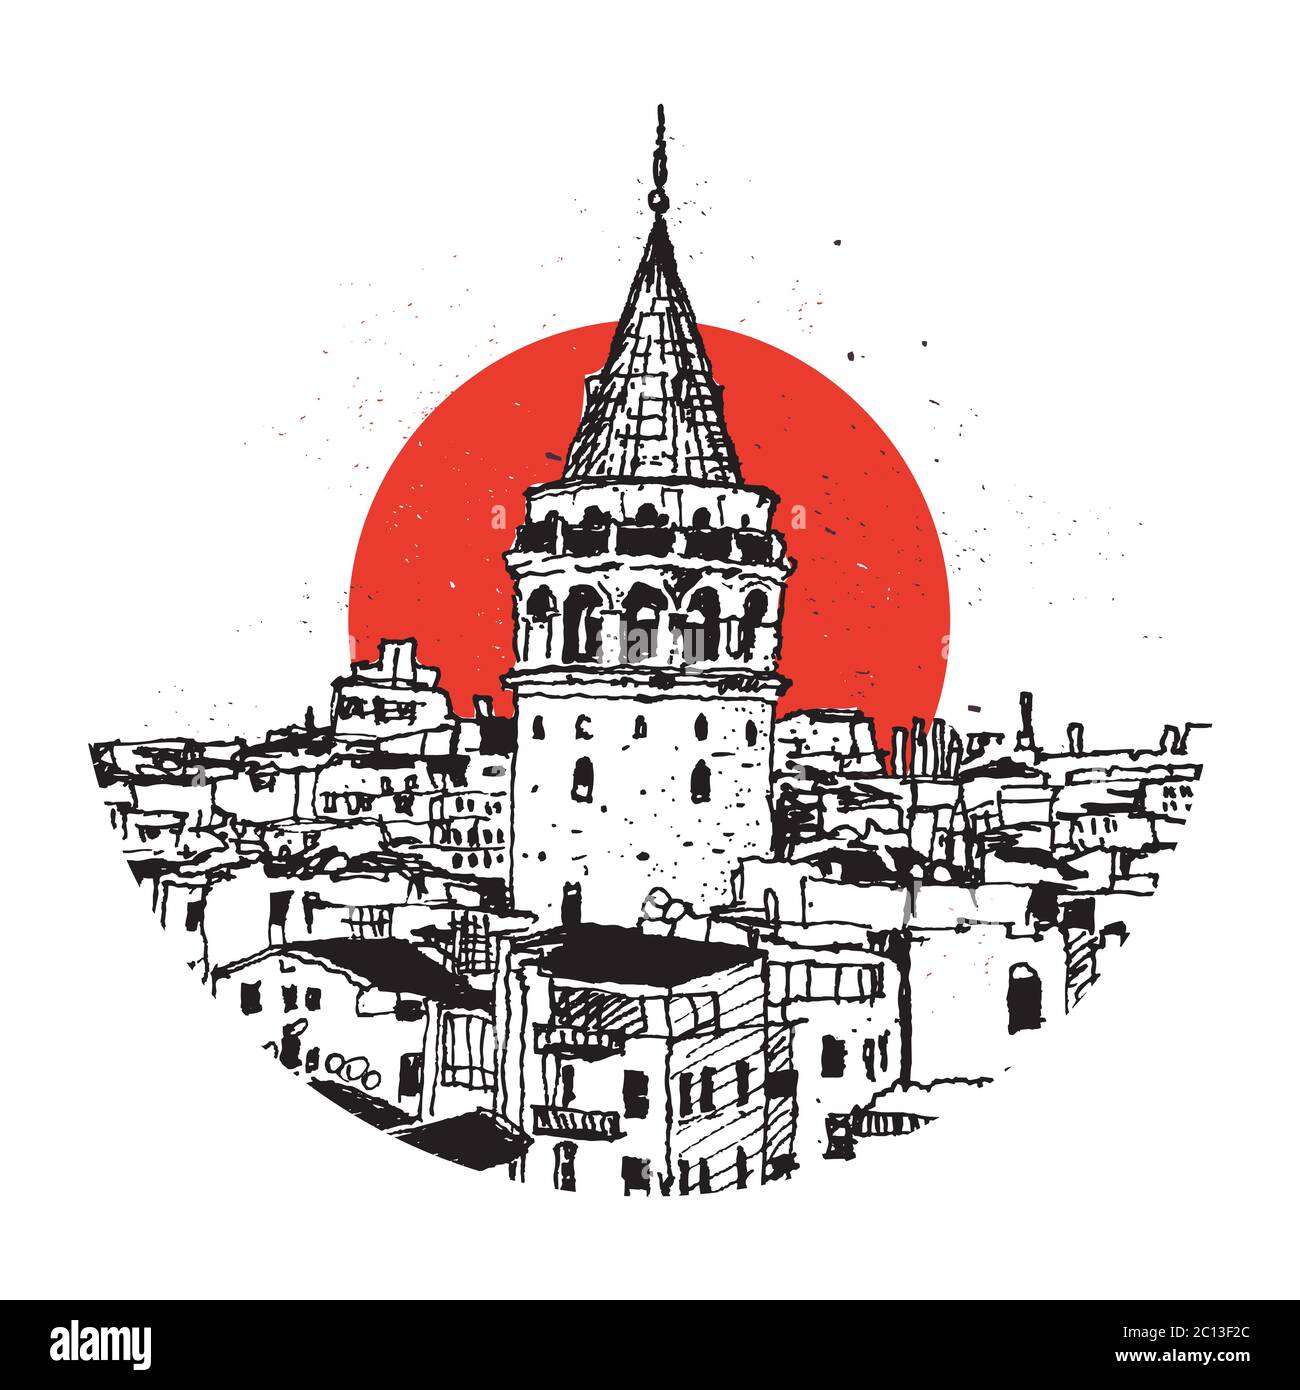 Zeichnung Skizzendarstellung des Galata-Turms und der Gebäude um, das symbolische Wahrzeichen von Istanbul, Türkei Stock Vektor